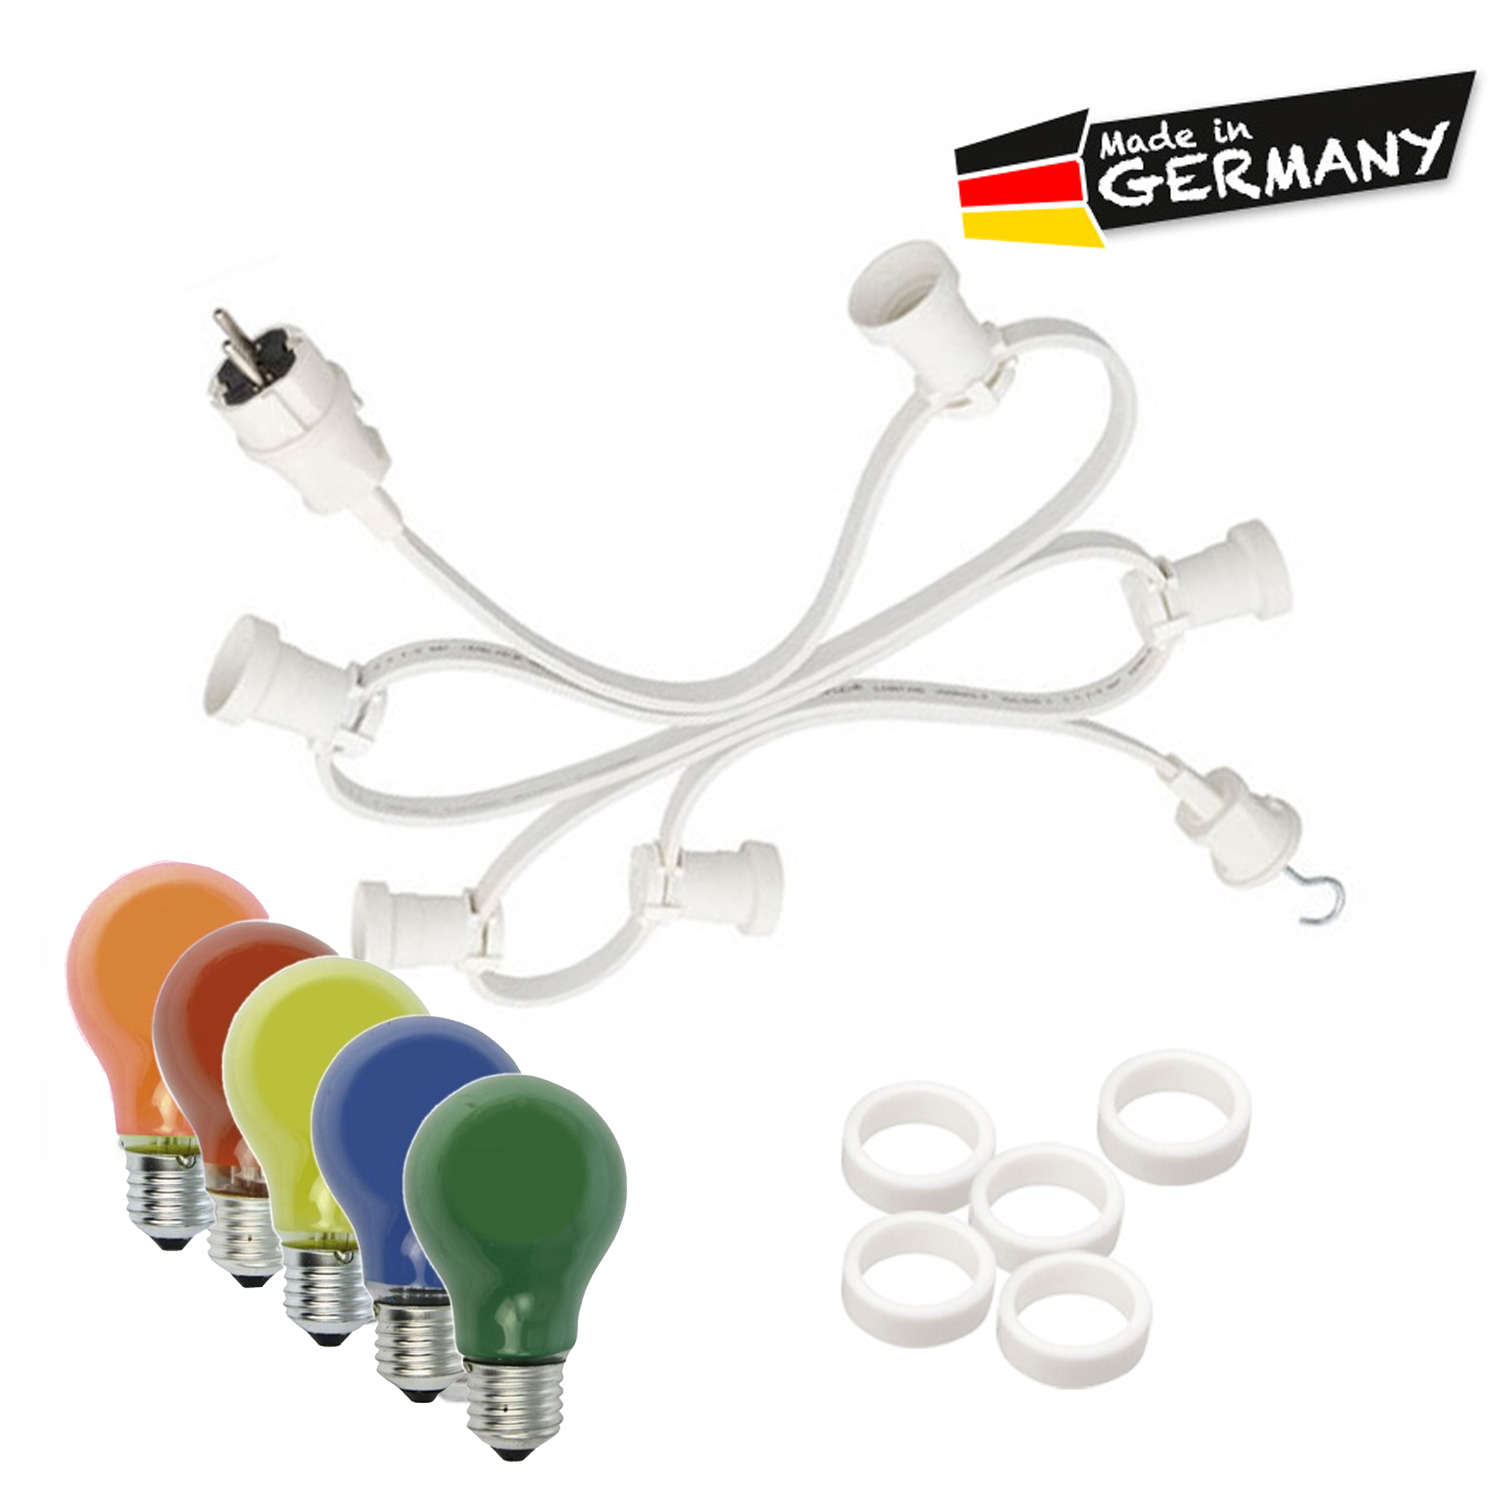 Illu-/Partylichterkette 40m - Außenlichterkette weiß - Made in Germany - 40 x bunte 25W Glühlampen